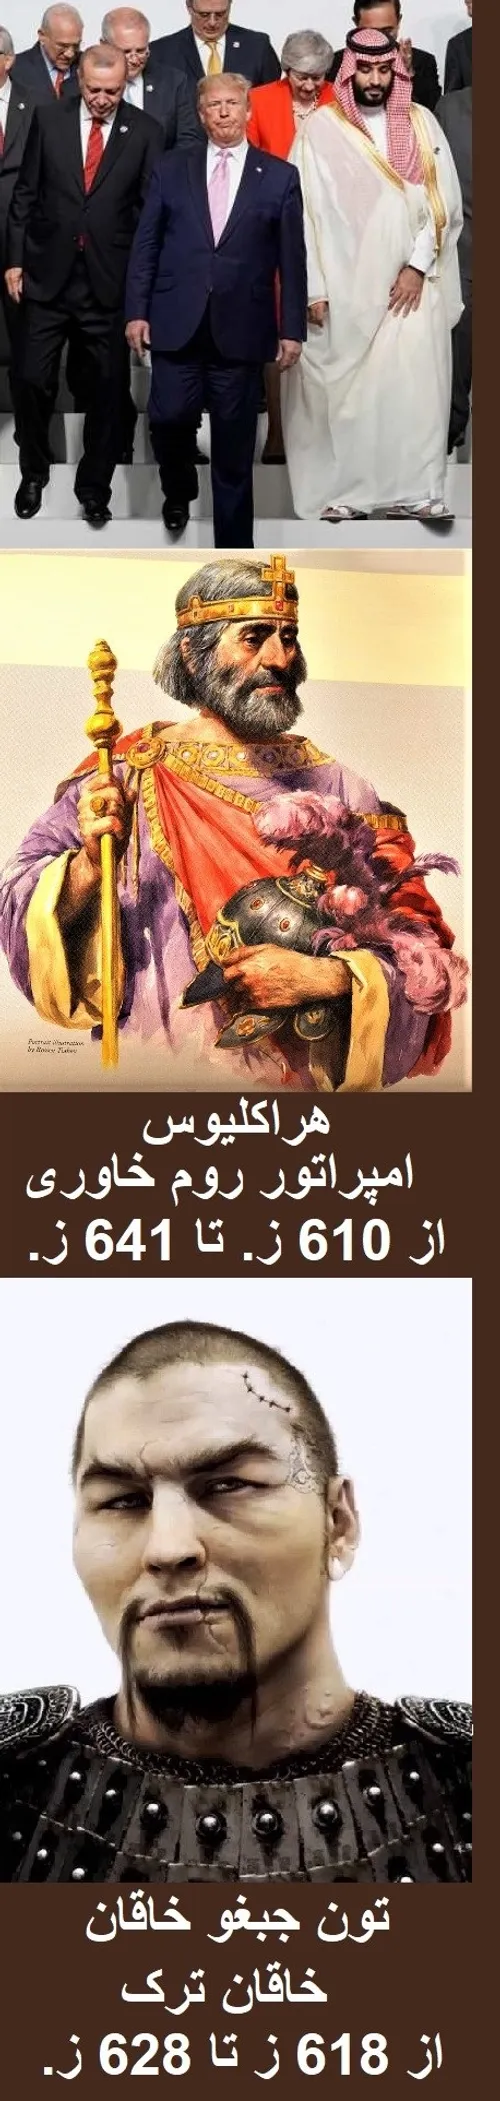 باختریان (غربی ها) ، عرب ها ، و ترک ها ؛ از 1400 سال پیش 